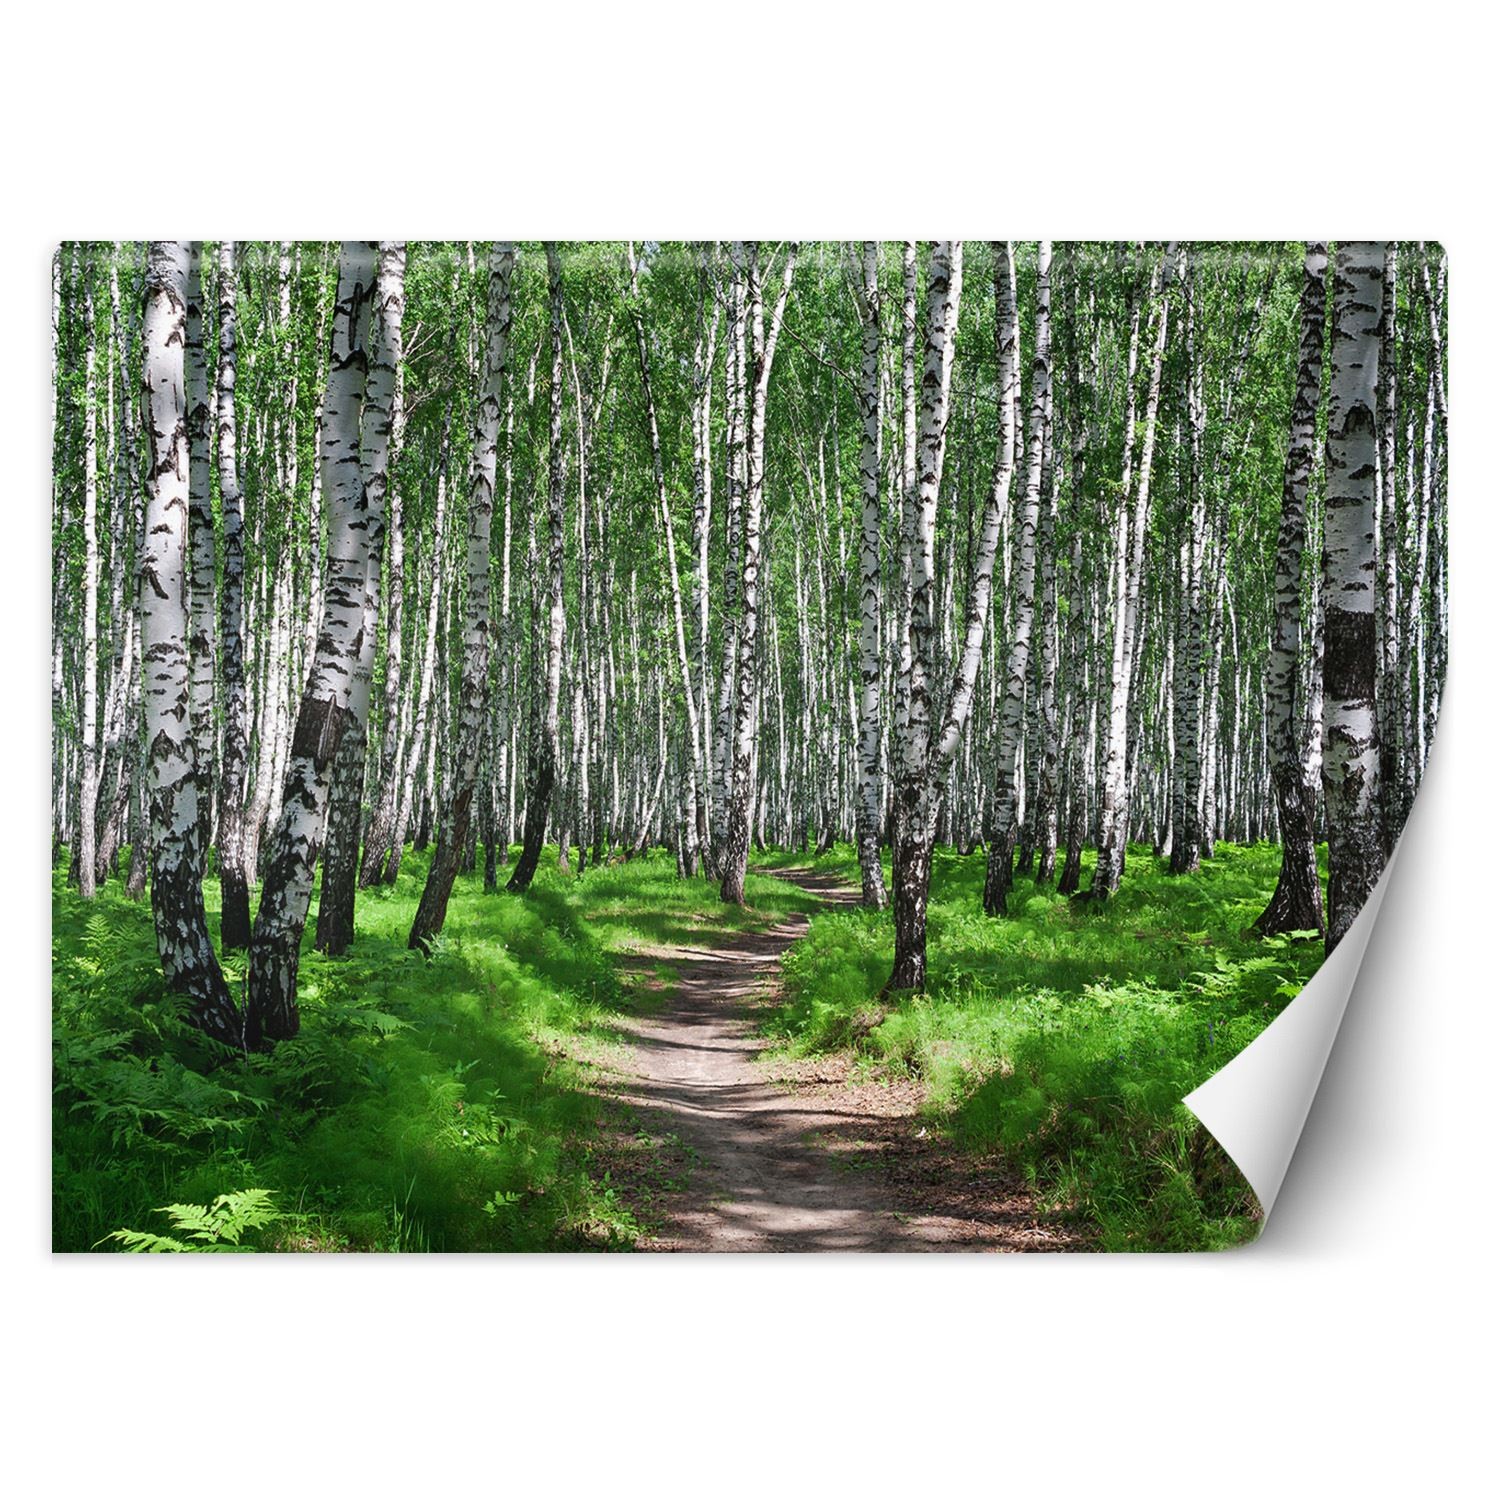 Trend24 – Behang – Birch Forest – Behangpapier – Fotobehang Natuur – Behang Woonkamer – 450x315x2 cm – Incl. behanglijm